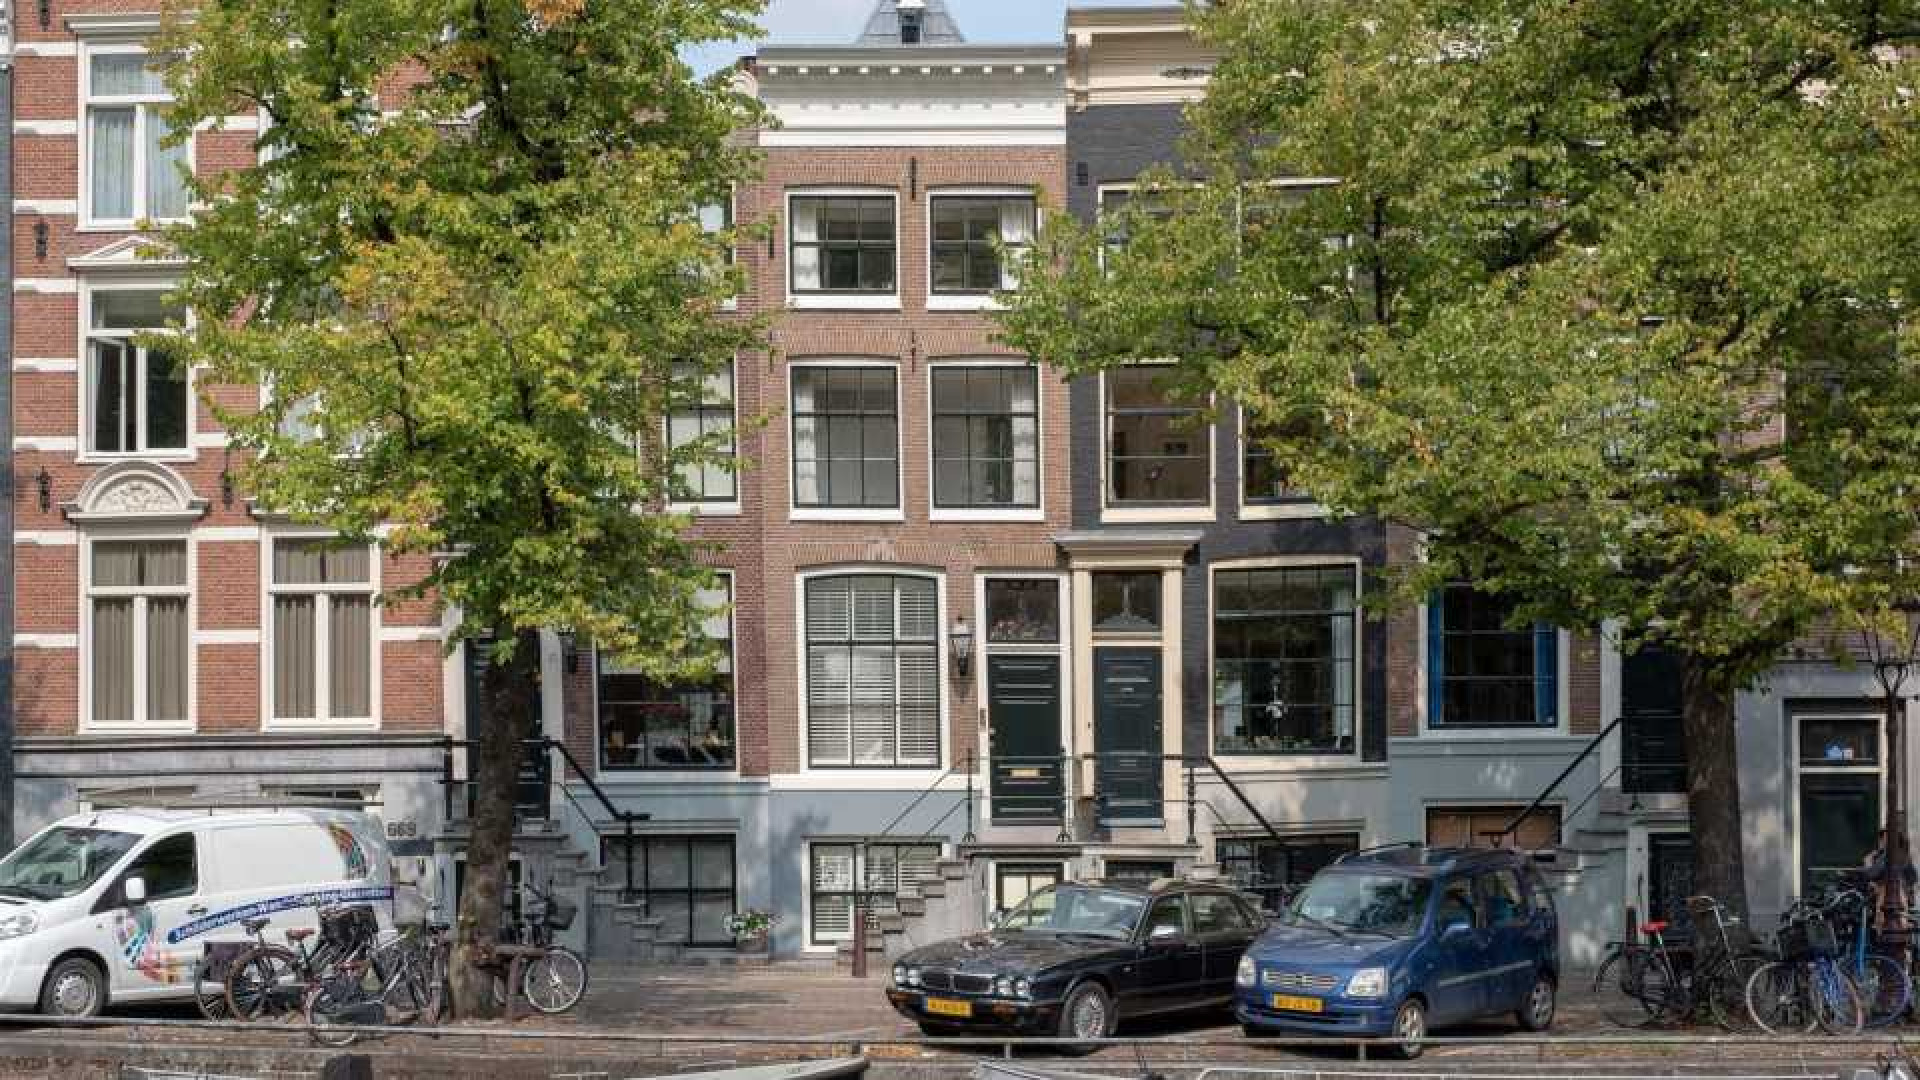 Jeroen van Koningsbrugge zet de bijl in vraagprijs van zijn fraaie grachtenpand in Amsterdam. 1